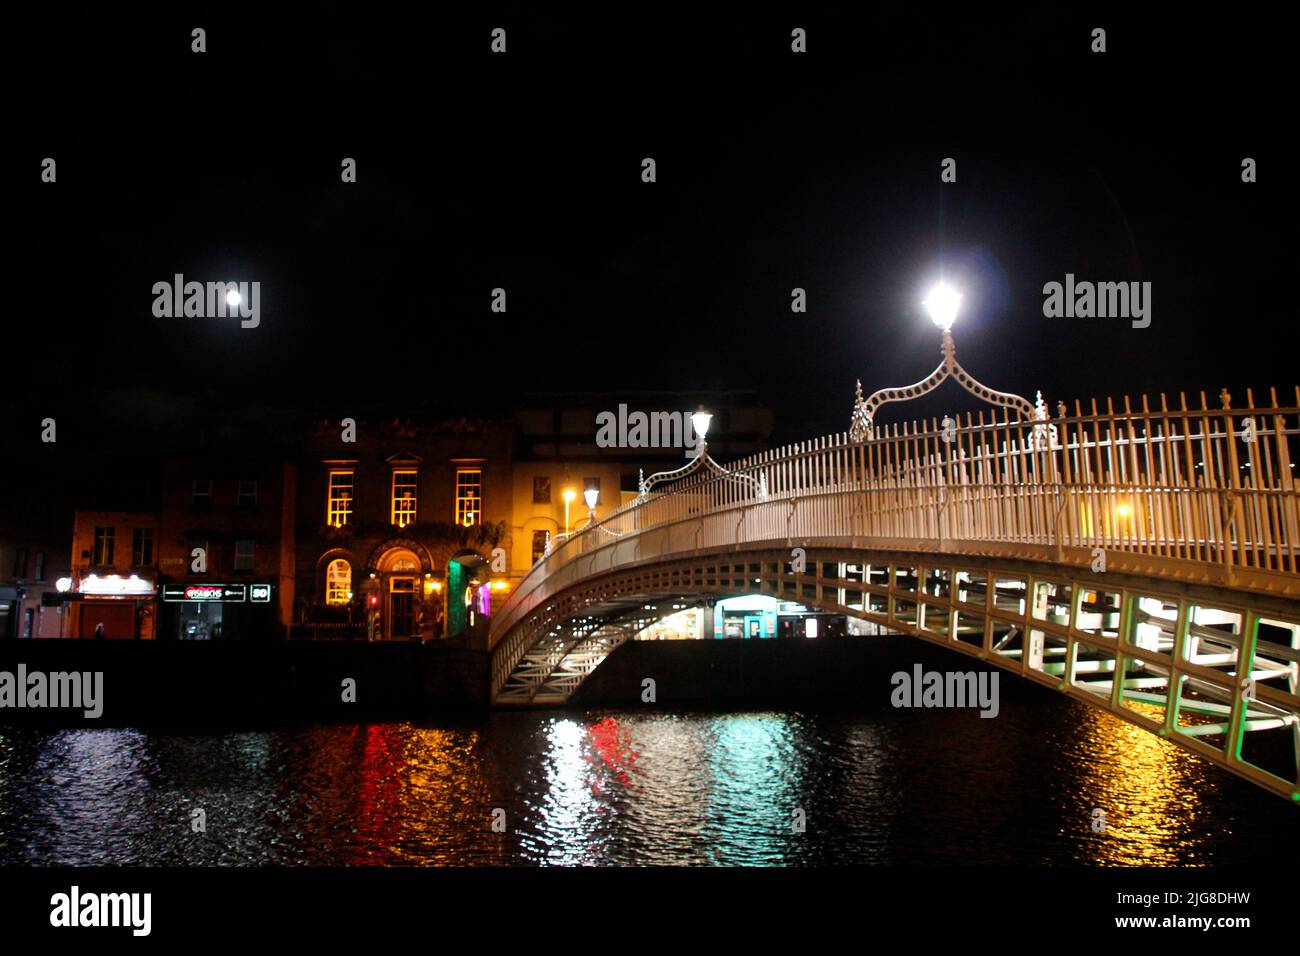 Irlande, Dublin, Hapenny Bridge, nuit, rivière Liffey, crépuscule, pleine lune, lampadaires, nuit Banque D'Images